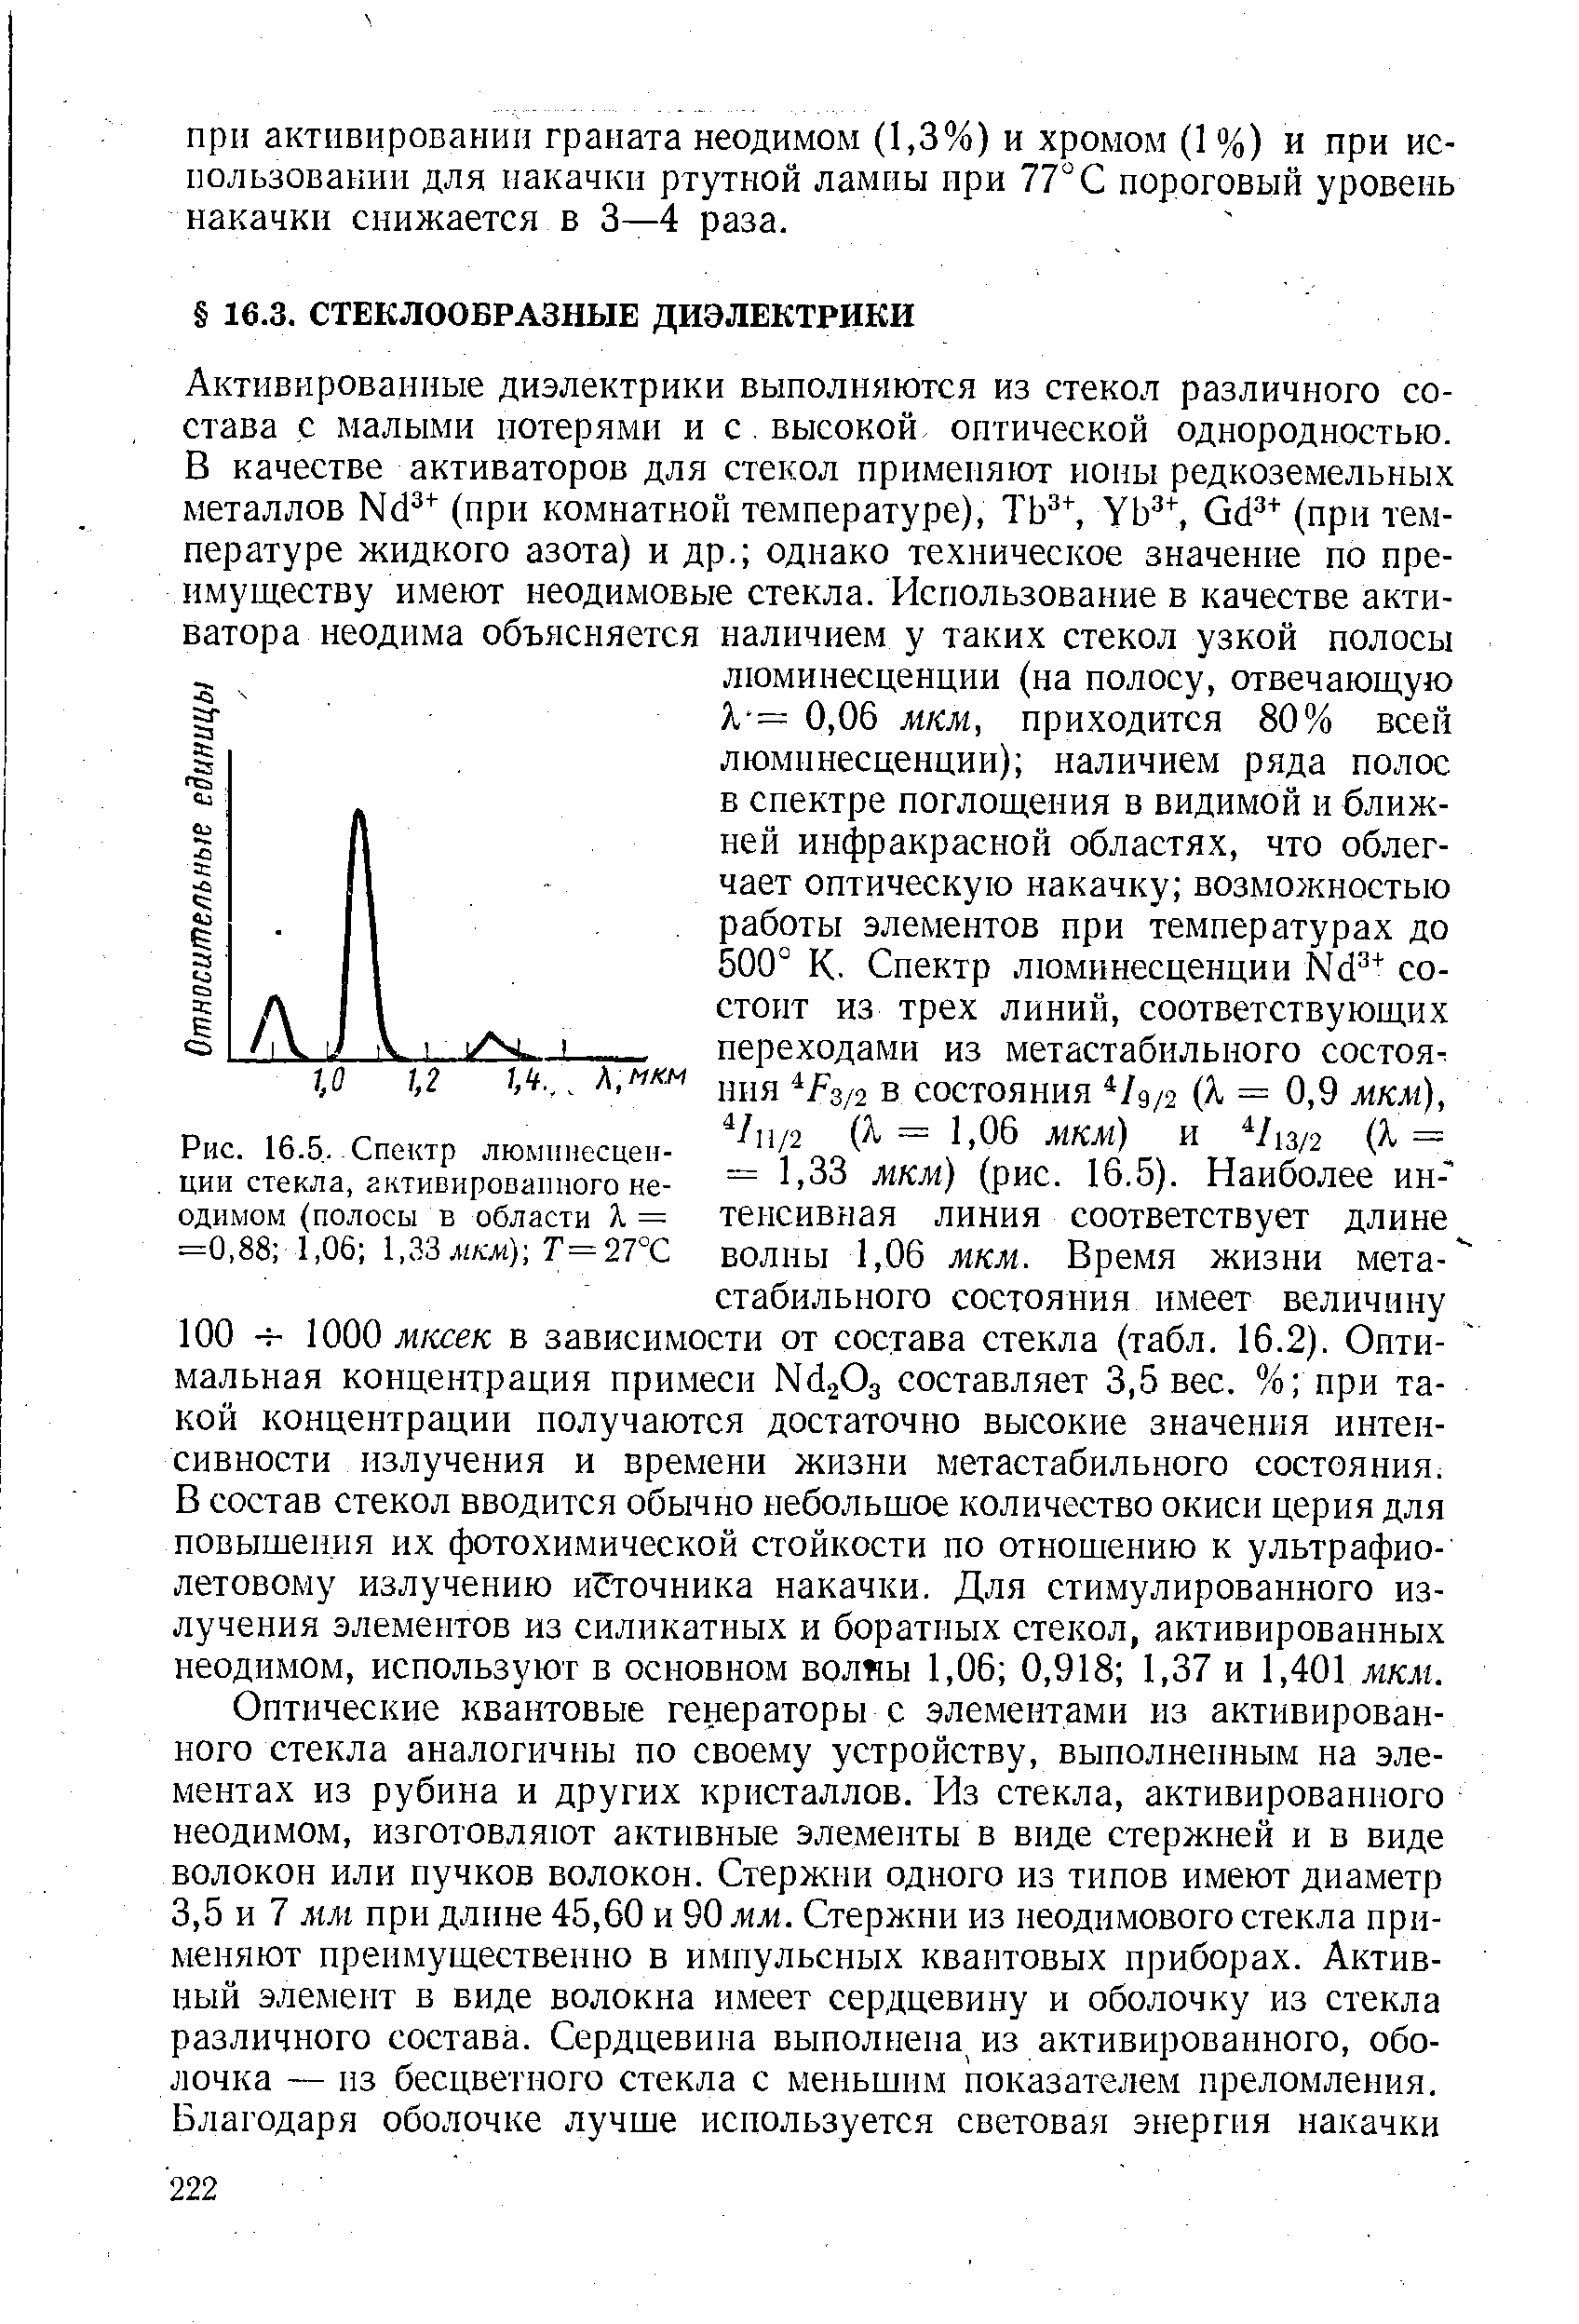 Рис. 16.5.-Спектр люминесценции стекла, активированного неодимом (полосы в области Л = =0,88 1,06 1,33 мкм)-, Т=27°С
